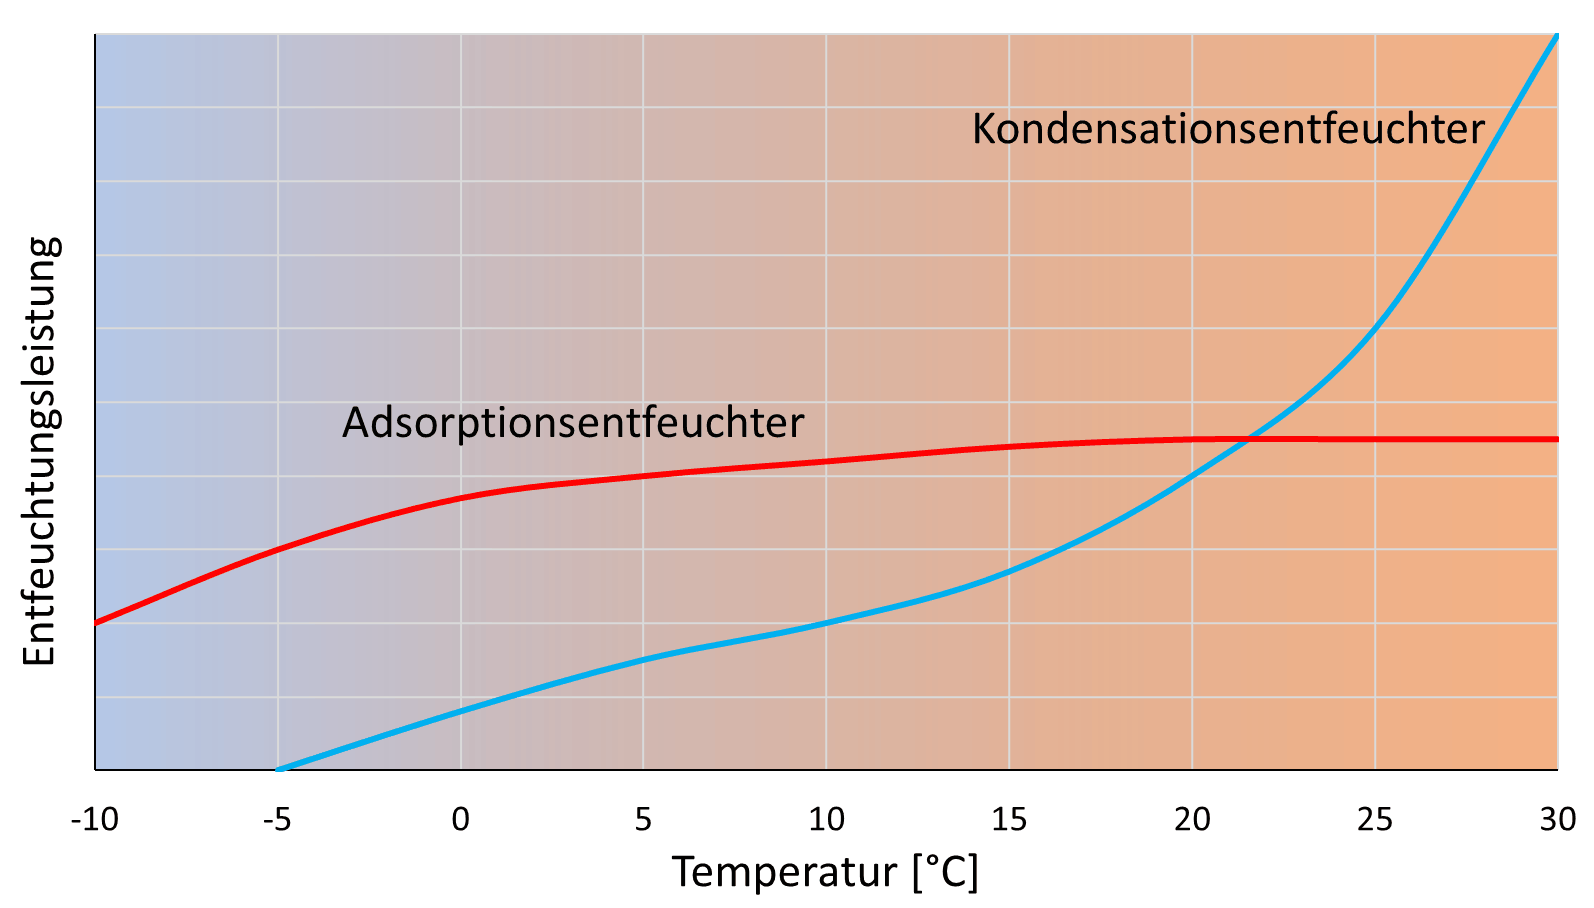 Entfeuchtungsleistung von Kondensations- und Adsorptionsentfeuchter über Temperatur.